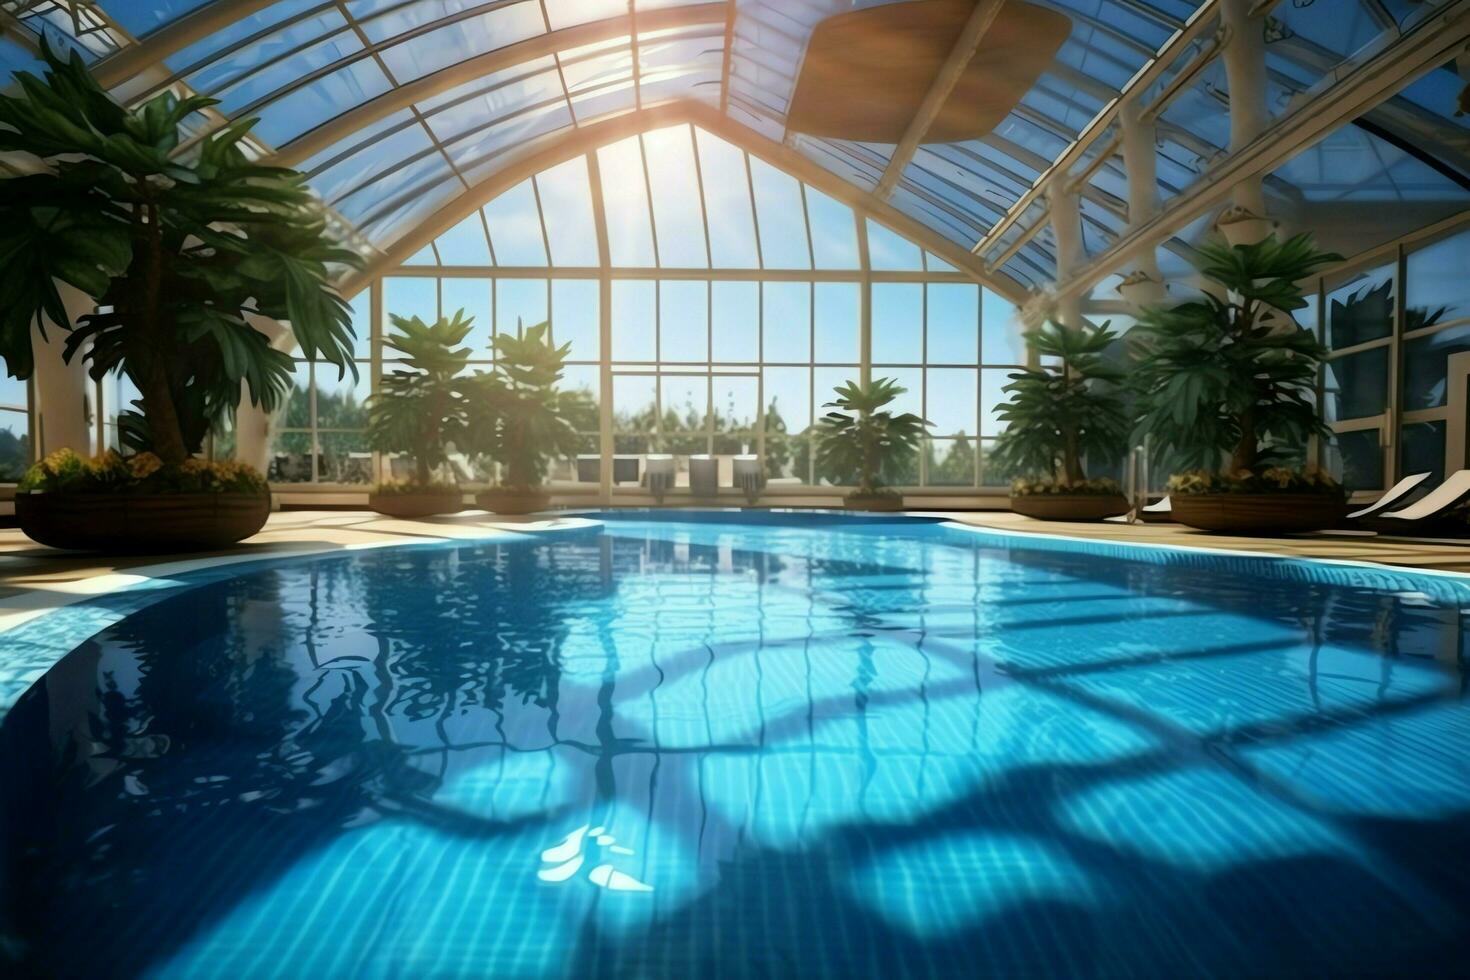 bellissimo all'aperto nuoto piscina nel lusso Hotel ricorrere con blu cielo per tempo libero rilassare e vacanza concetto di ai generato foto